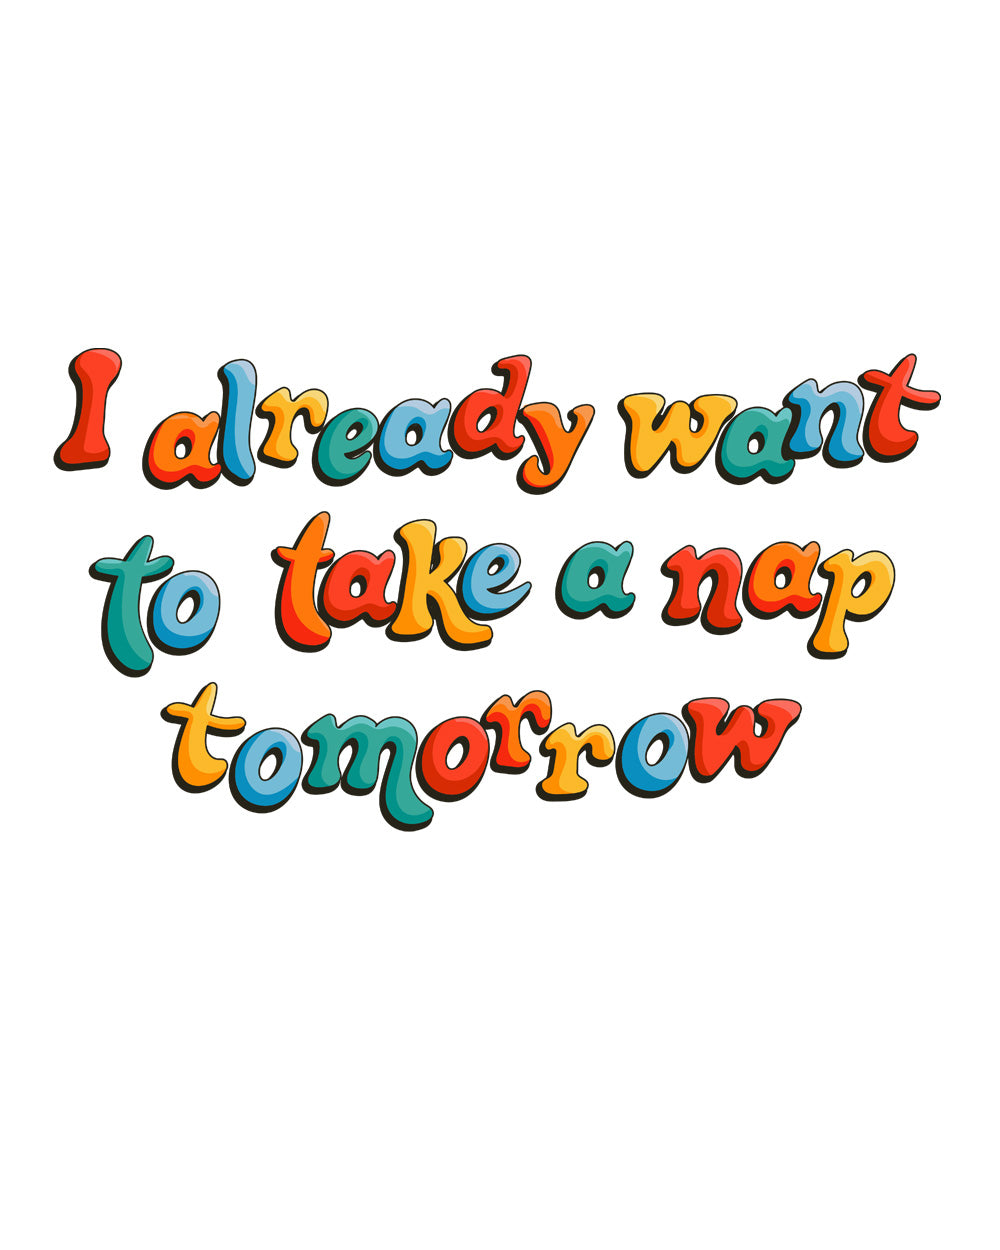 I Already Want to Take a Nap Tomorrow Funny Slogan Lazy Sleep Cotton T-Shirt